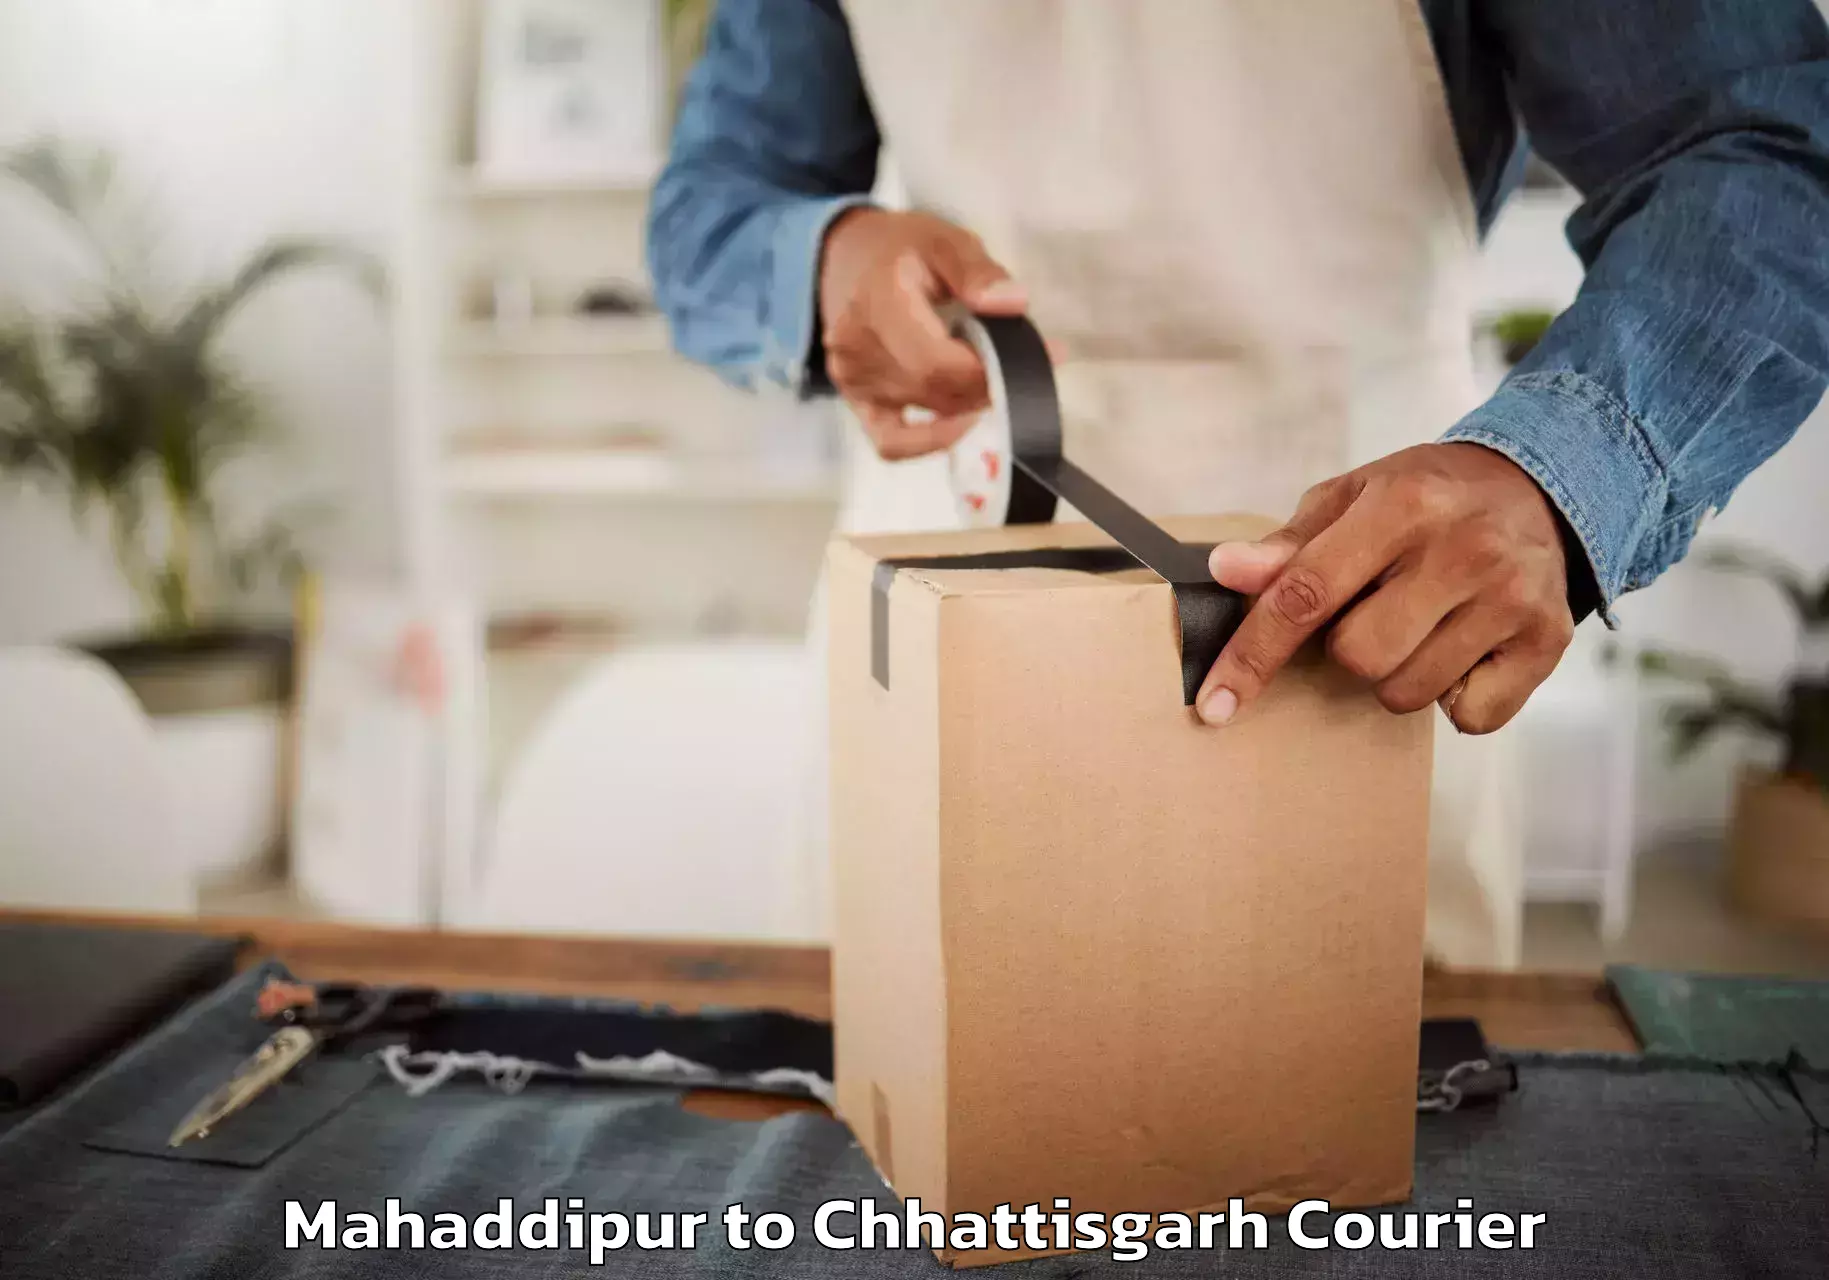 Furniture movers and packers Mahaddipur to Patna Chhattisgarh